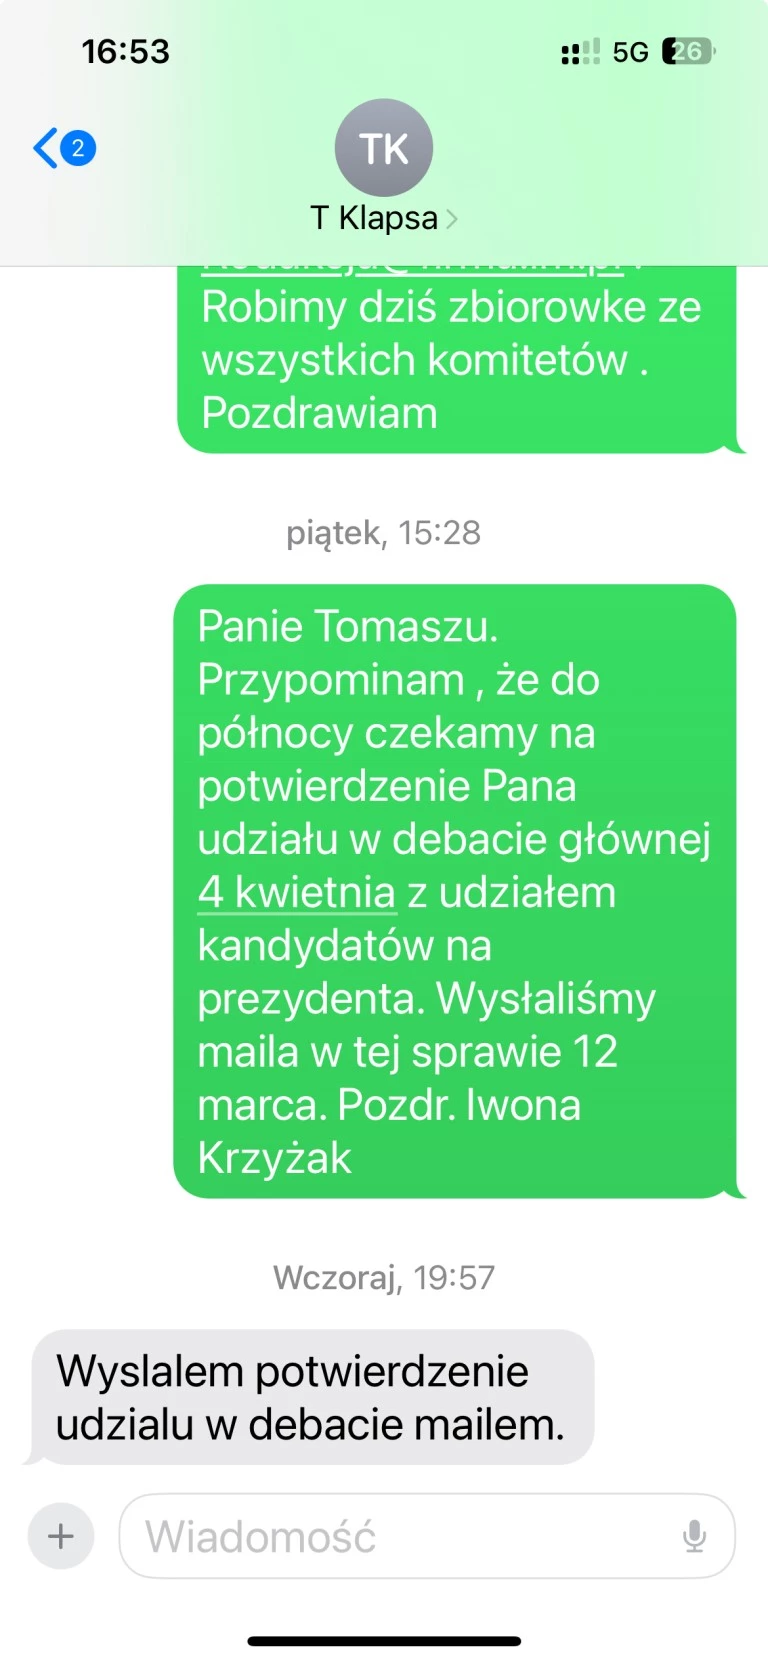 LM.pl odpowiada na zarzuty Tomasza Klapsy. Pokazujemy całą korespondencję